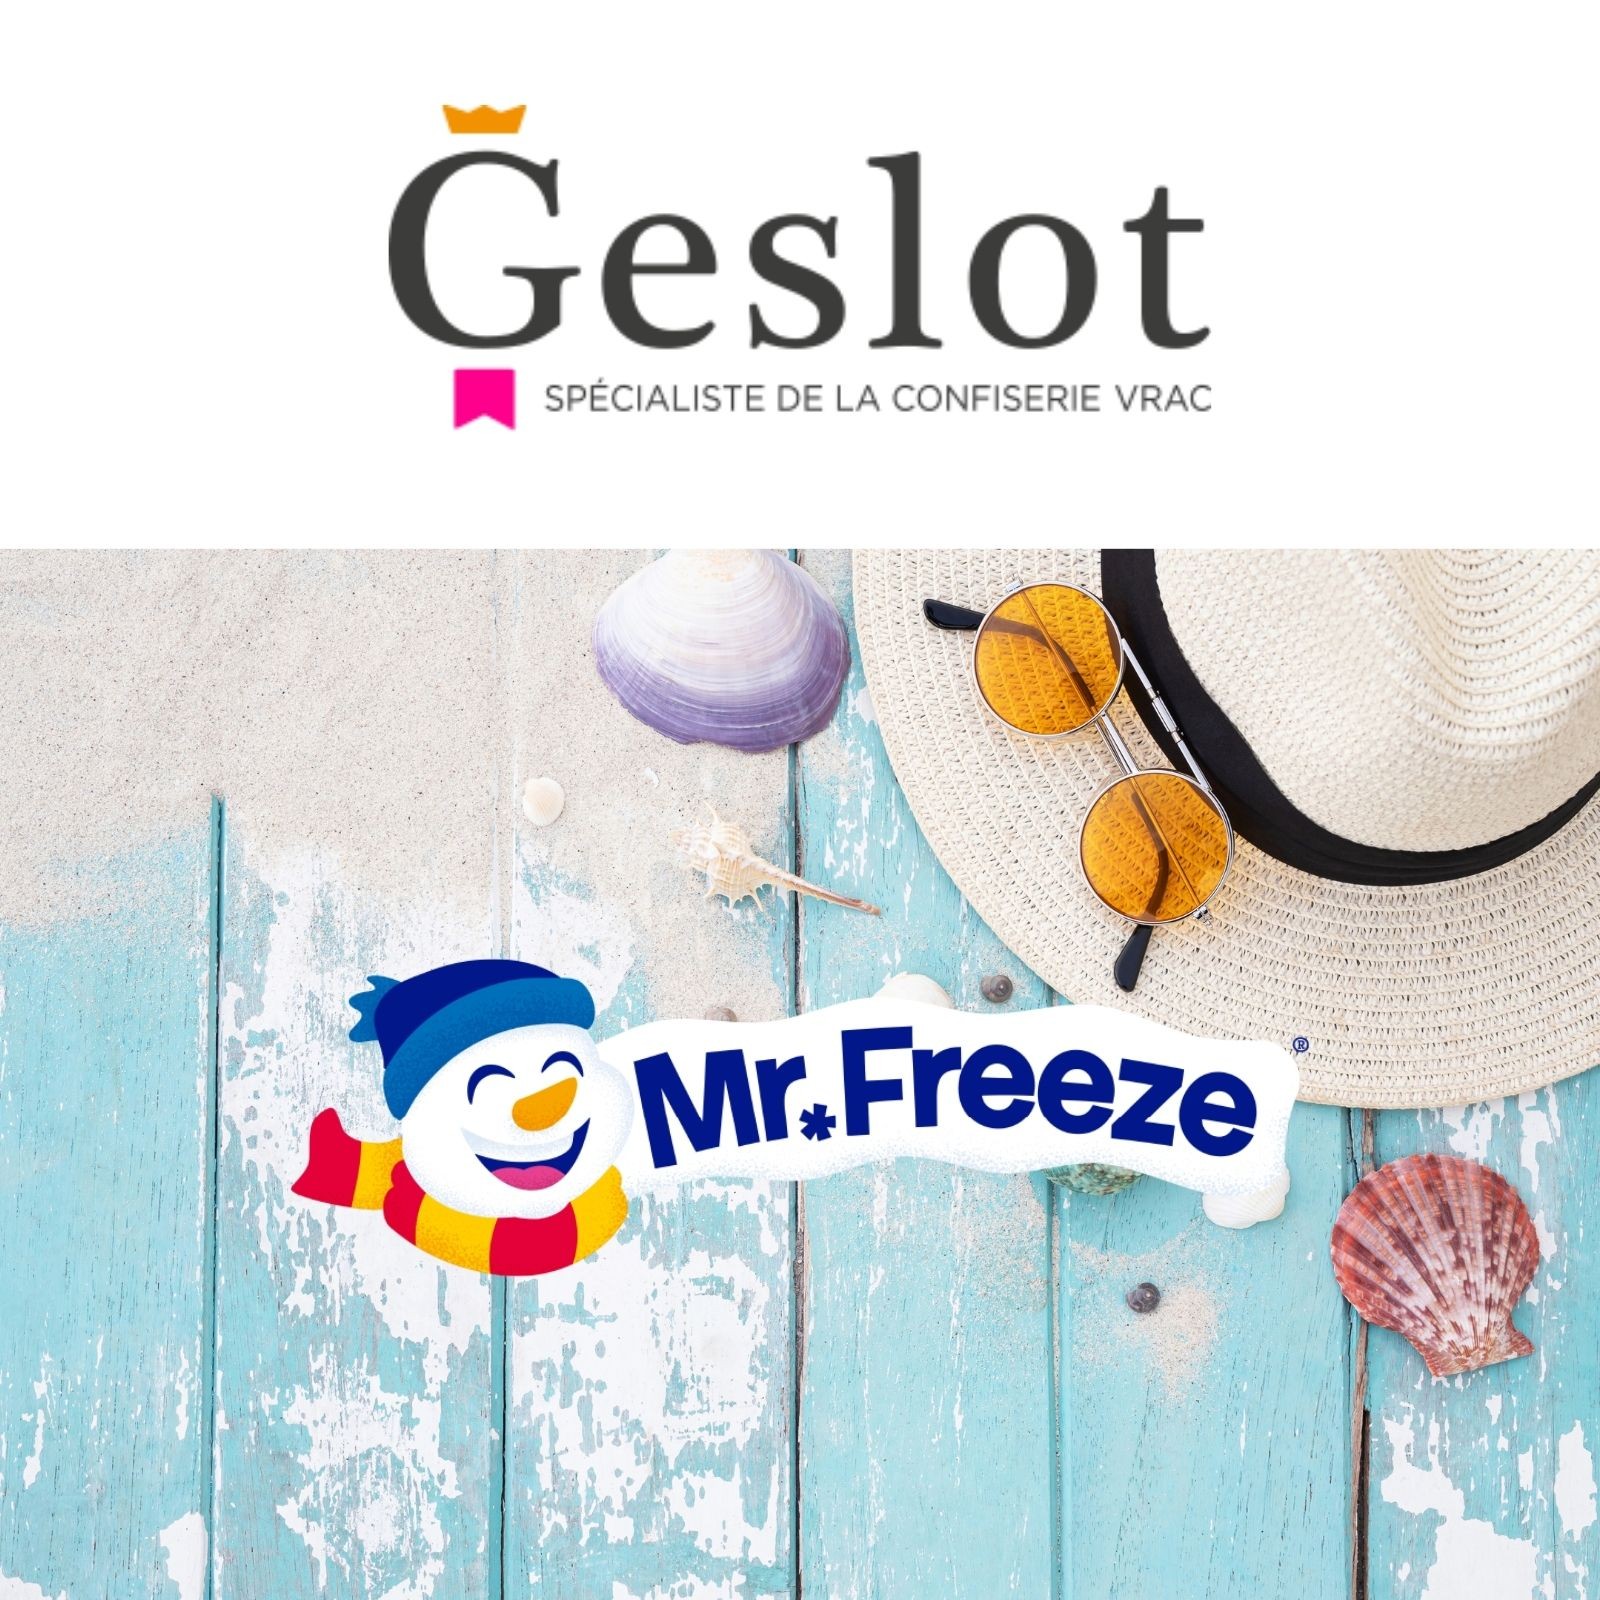 Mister Freeze : la sucette à glacer star de Geslot